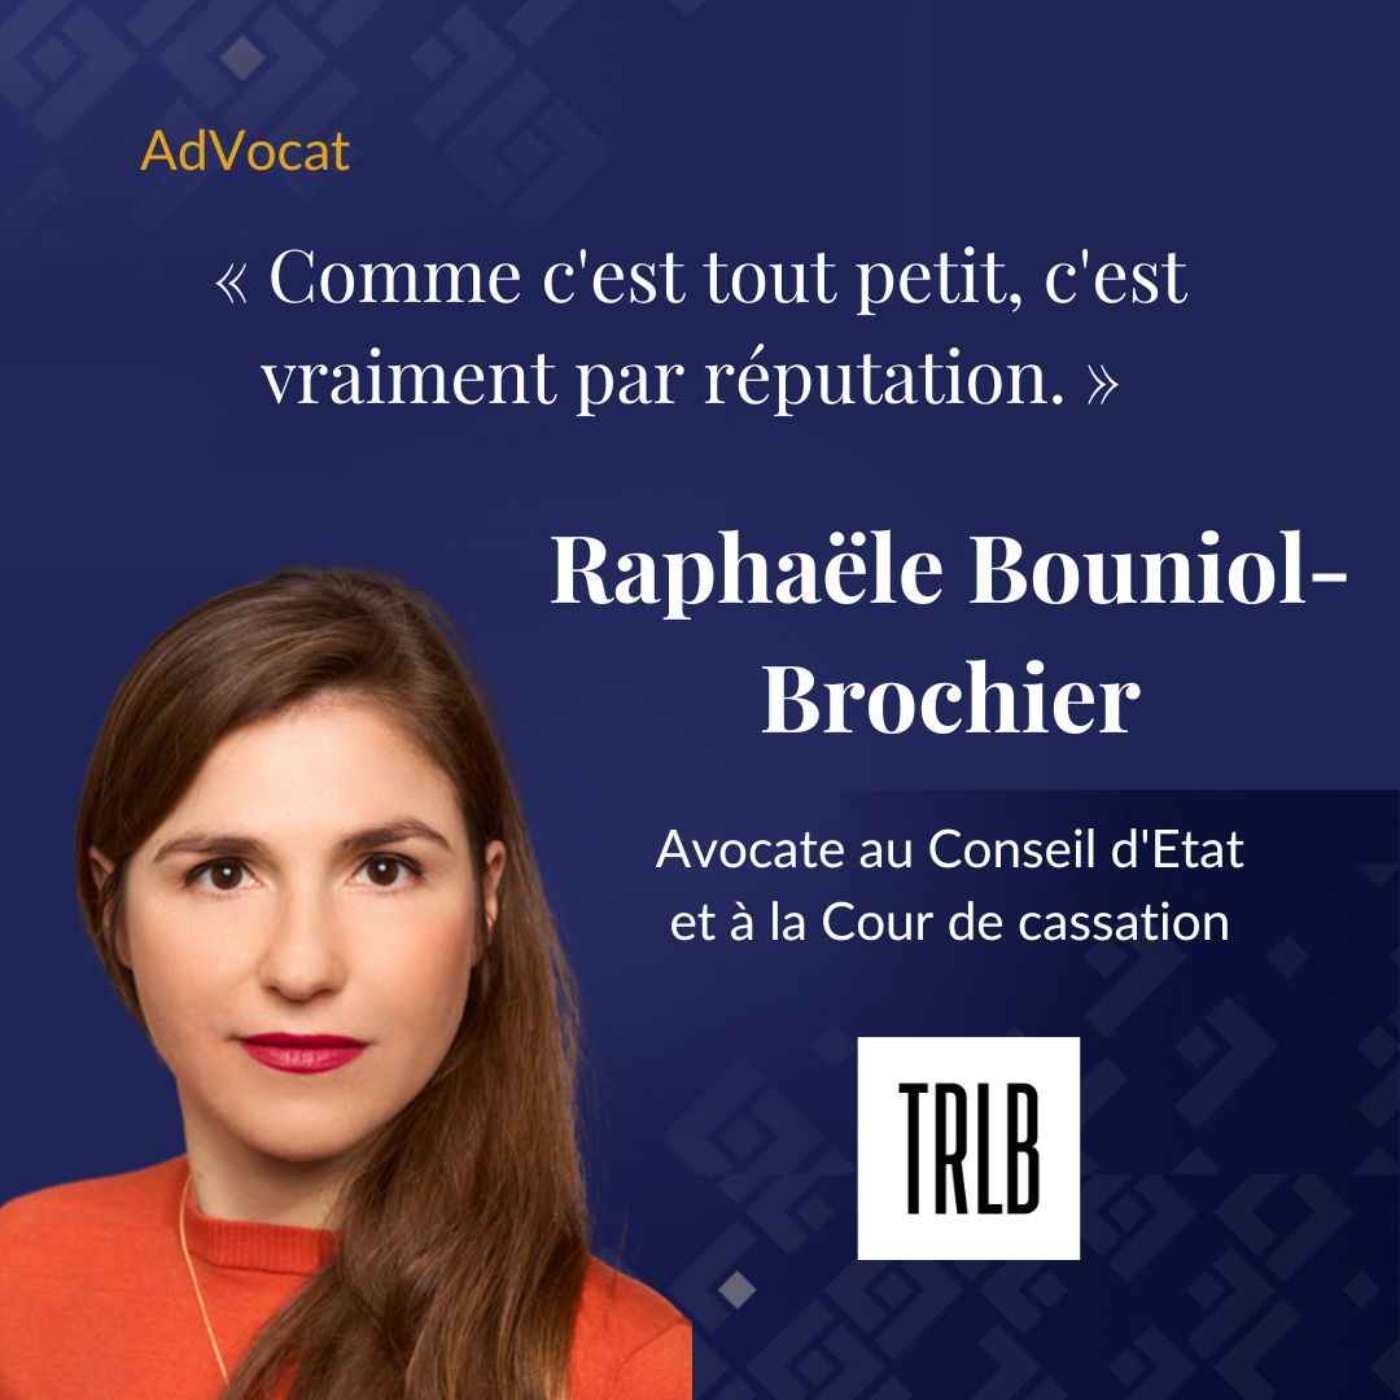 Raphaële Bouniol-Brochier - Avocate au Conseil d'Etat et à la Cour de cassation